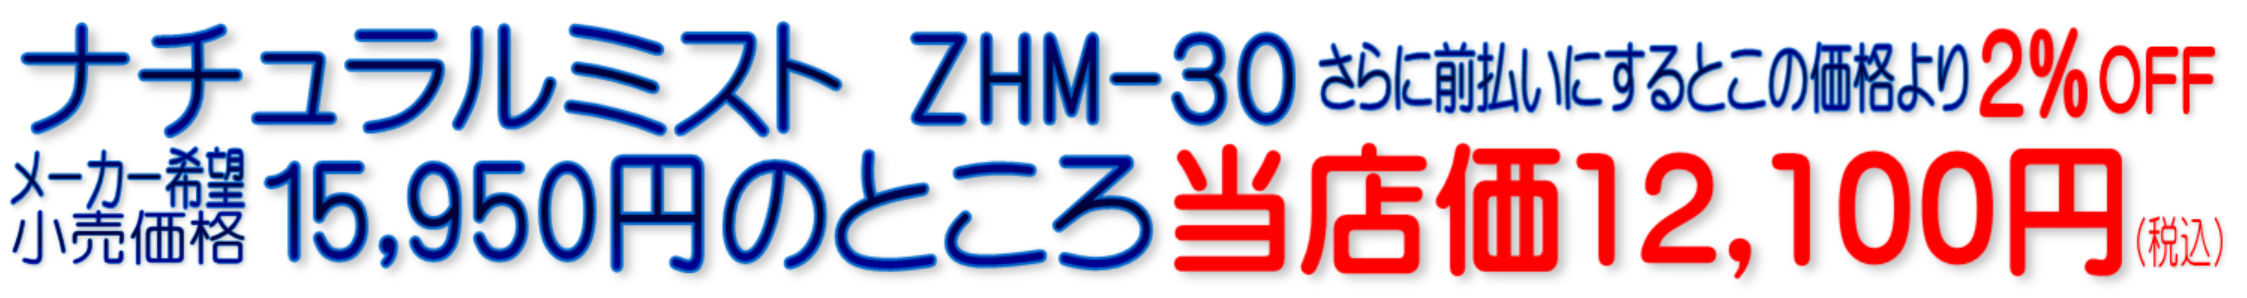 ZHM-30